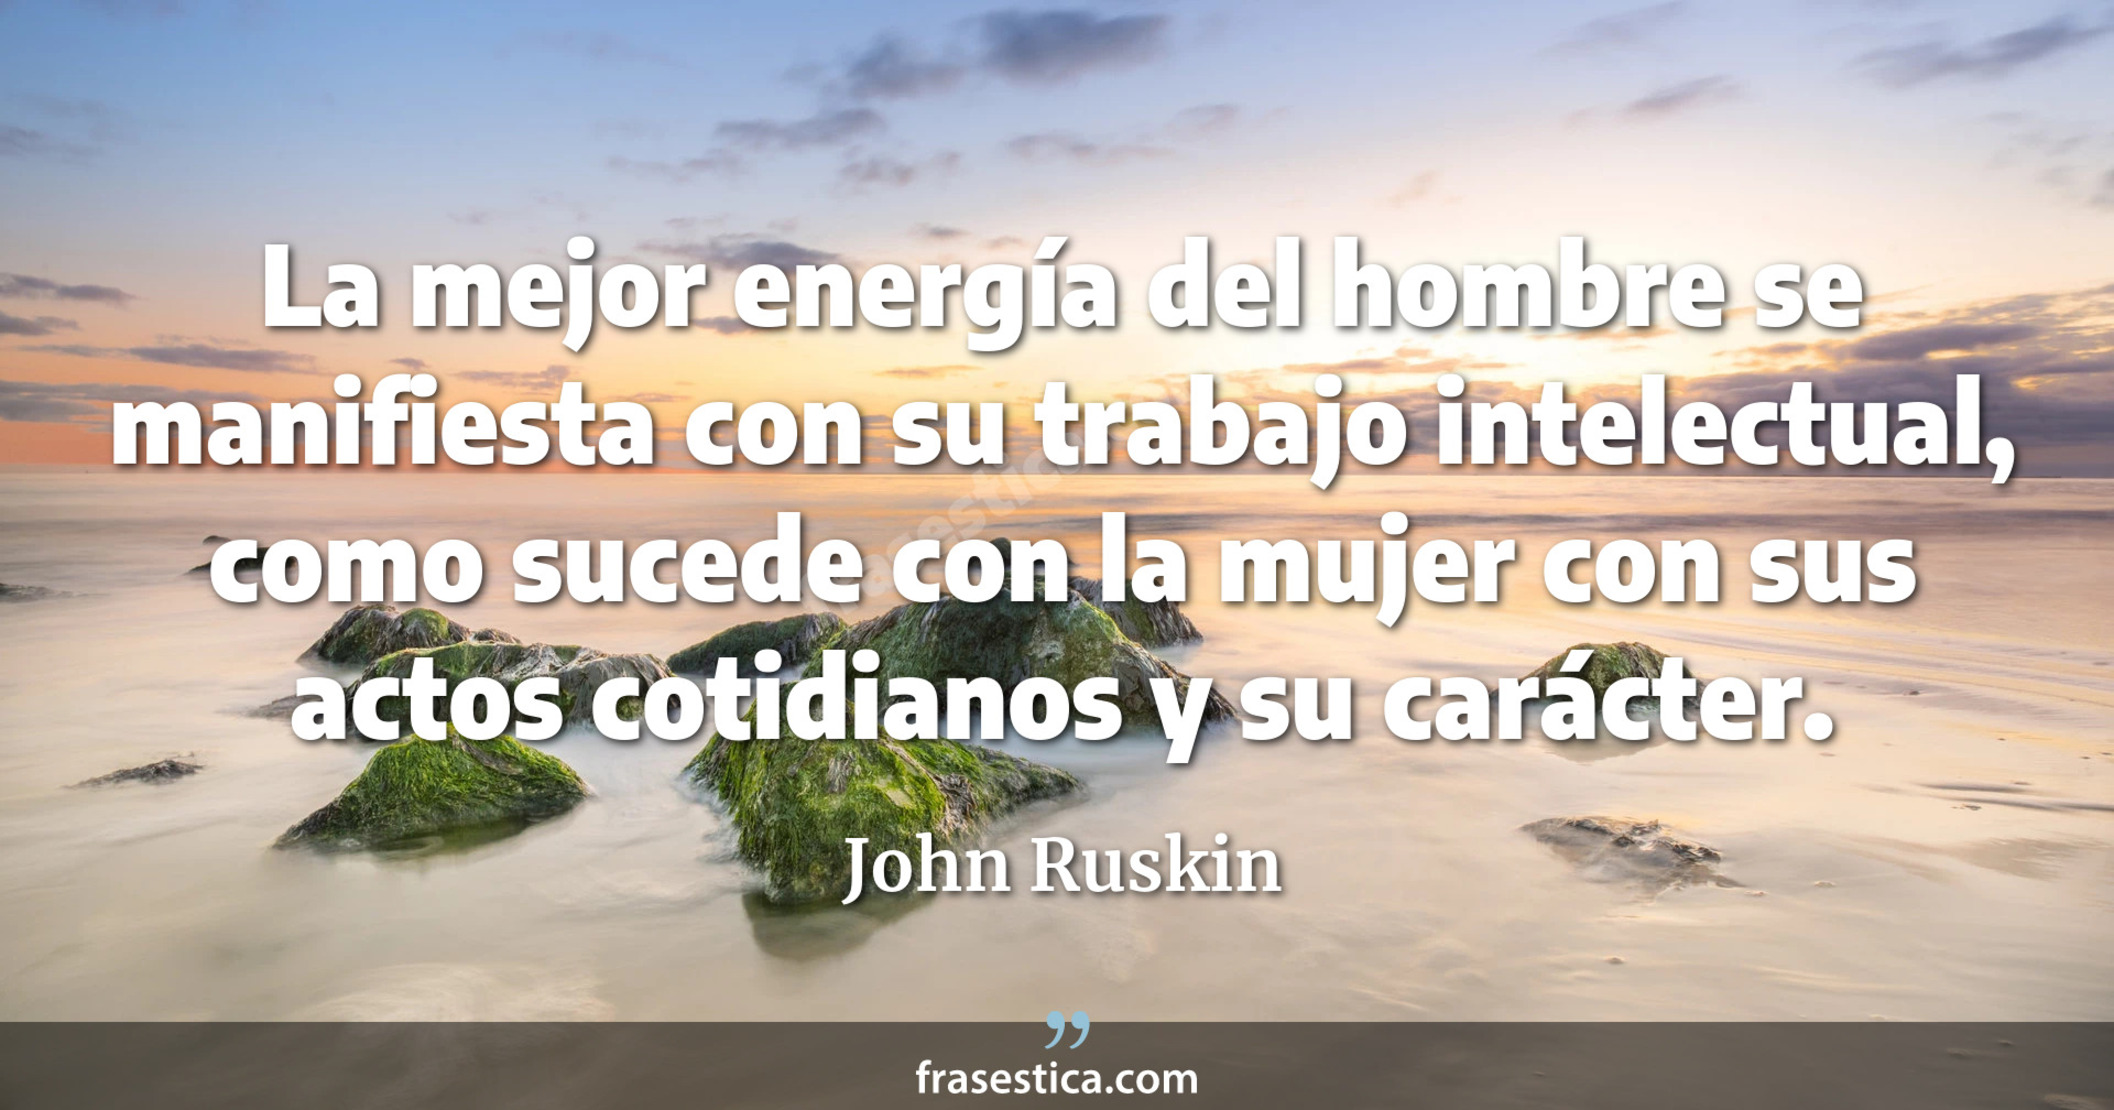 La mejor energía del hombre se manifiesta con su trabajo intelectual, como sucede con la mujer con sus actos cotidianos y su carácter.  - John Ruskin